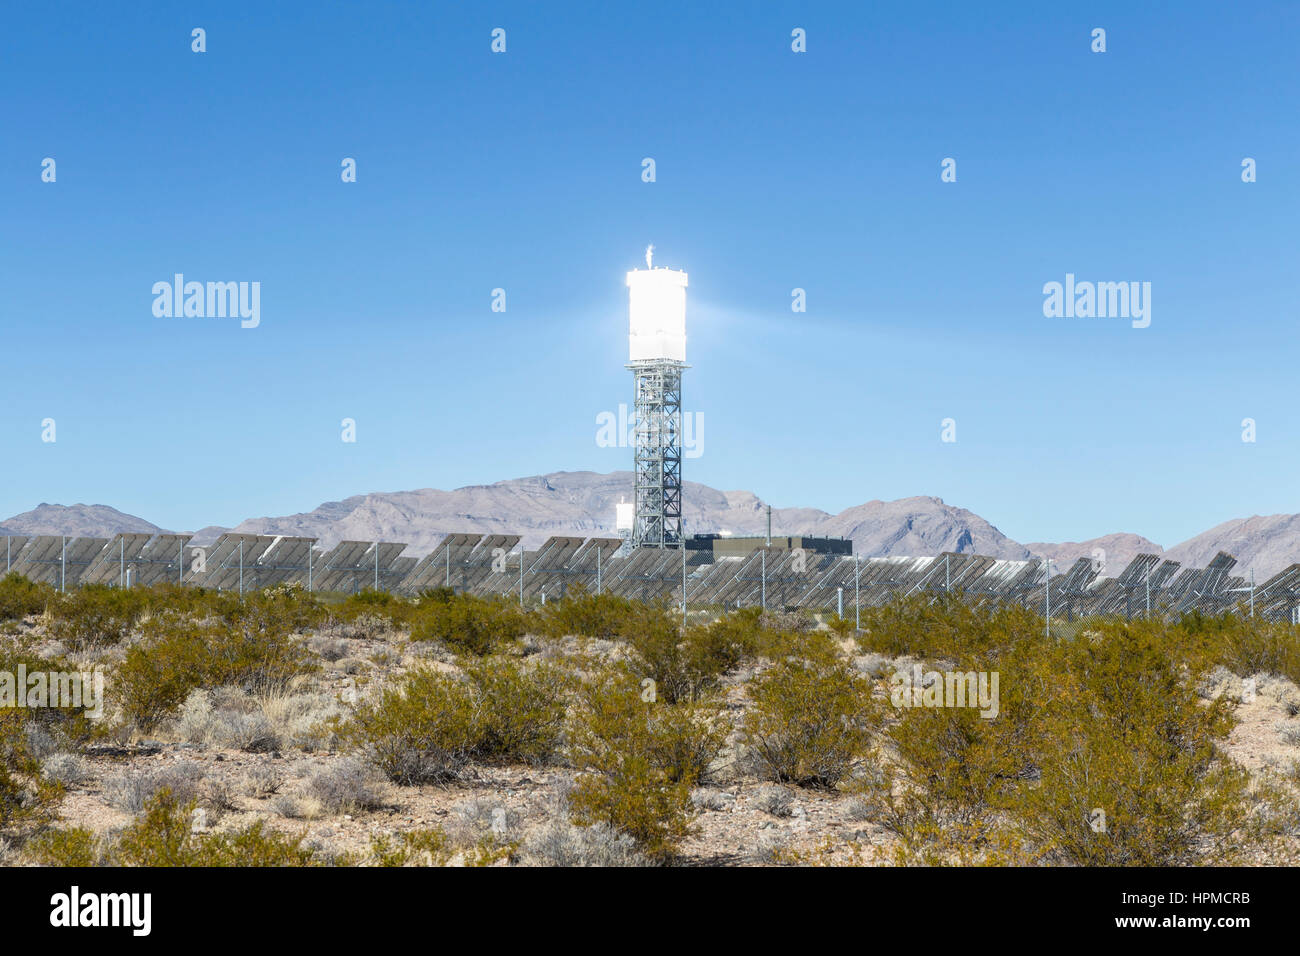 Ivanpah, California, USA - 26 novembre 2014 : Solar Reflective power tower à l'Ivanpah centrale solaire dans le désert de Mojave. Banque D'Images